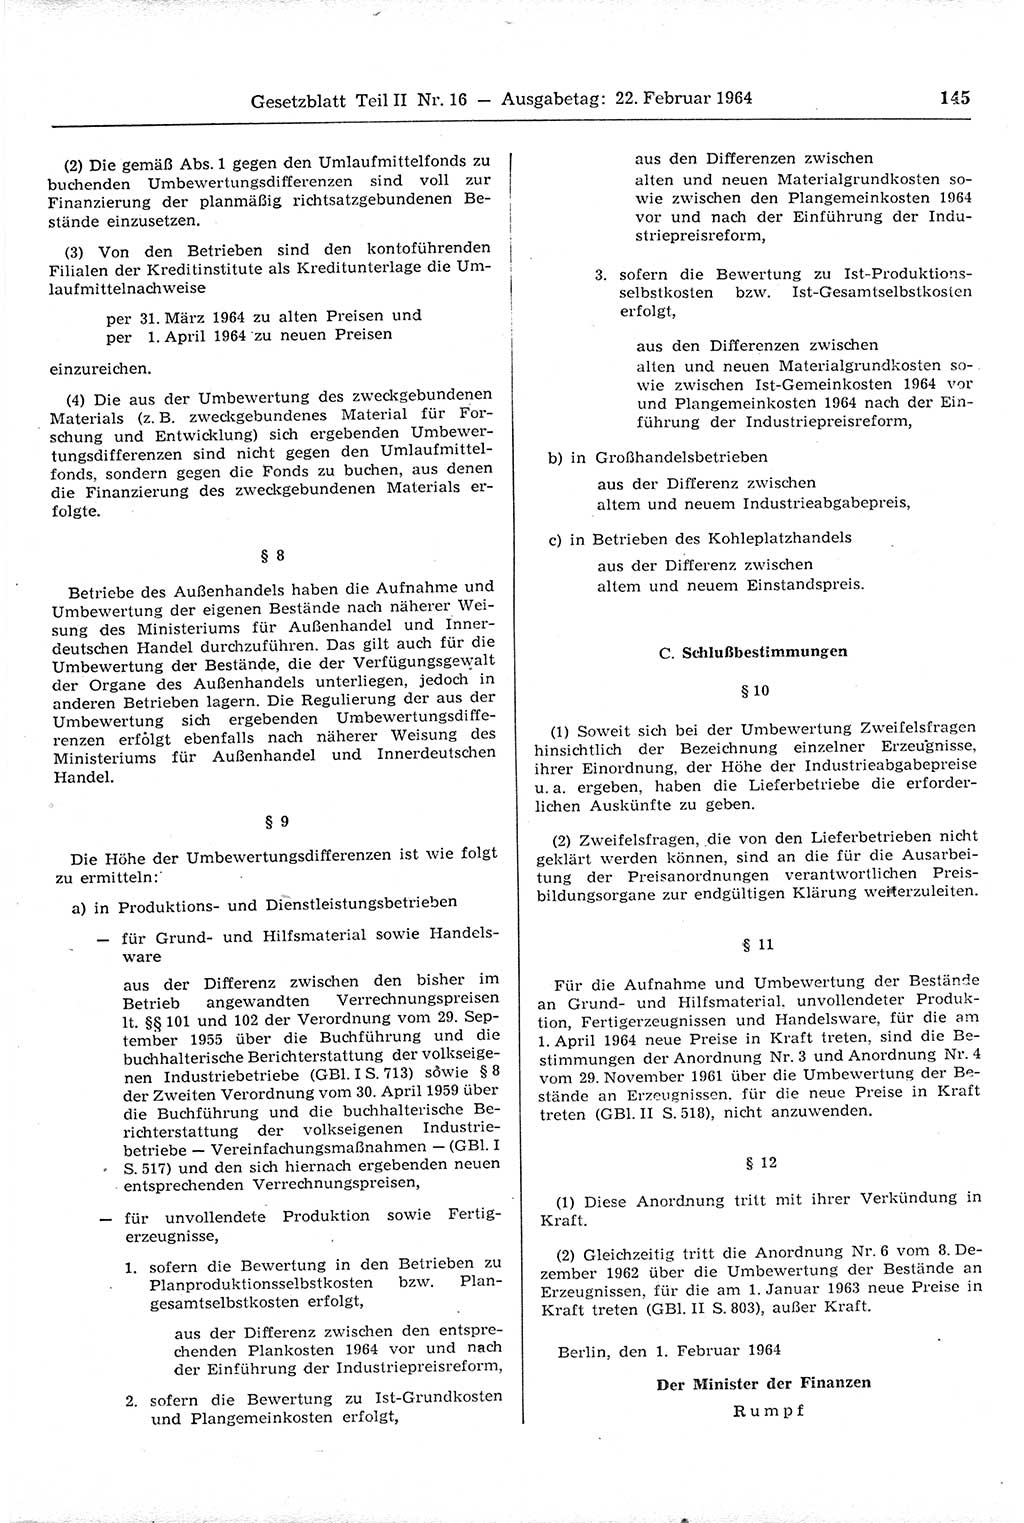 Gesetzblatt (GBl.) der Deutschen Demokratischen Republik (DDR) Teil ⅠⅠ 1964, Seite 145 (GBl. DDR ⅠⅠ 1964, S. 145)